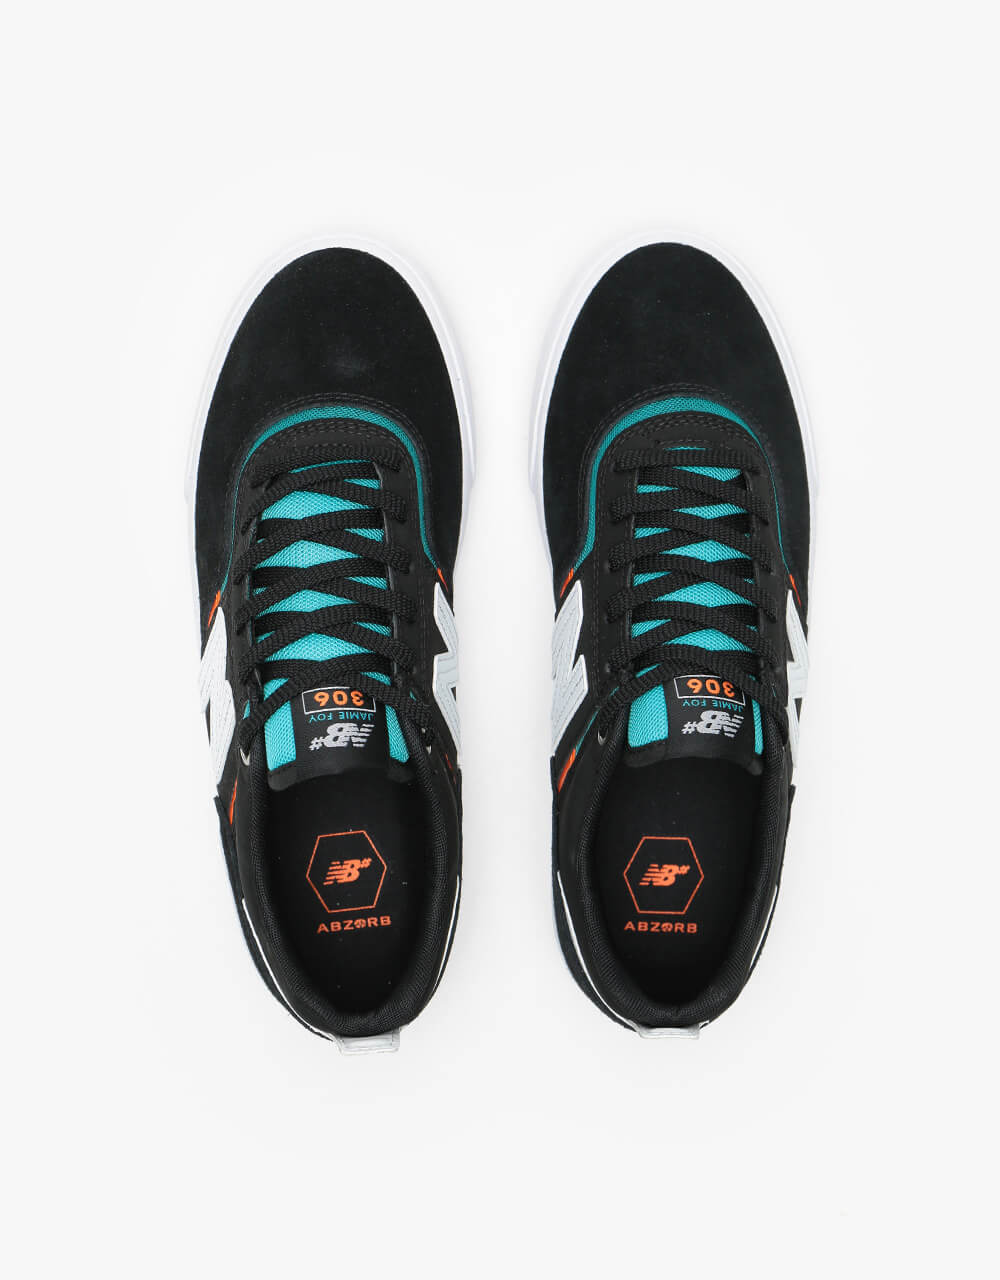 New Balance Numeric 306 Skate Shoes - Black/Turquoise